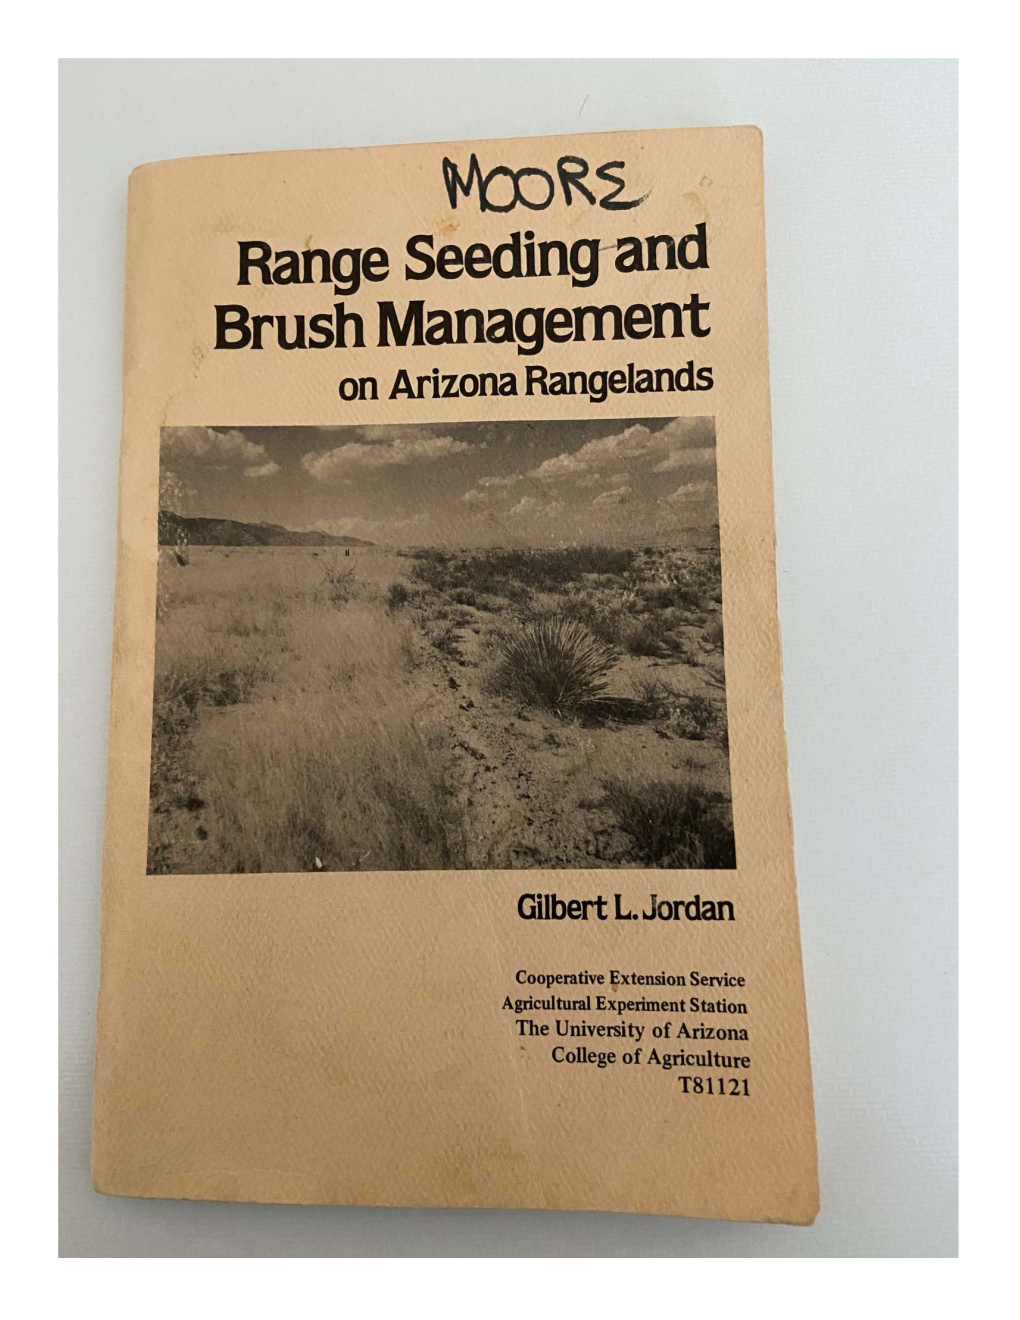 Range Seeding-And Brush Management on Arizona Rangelands